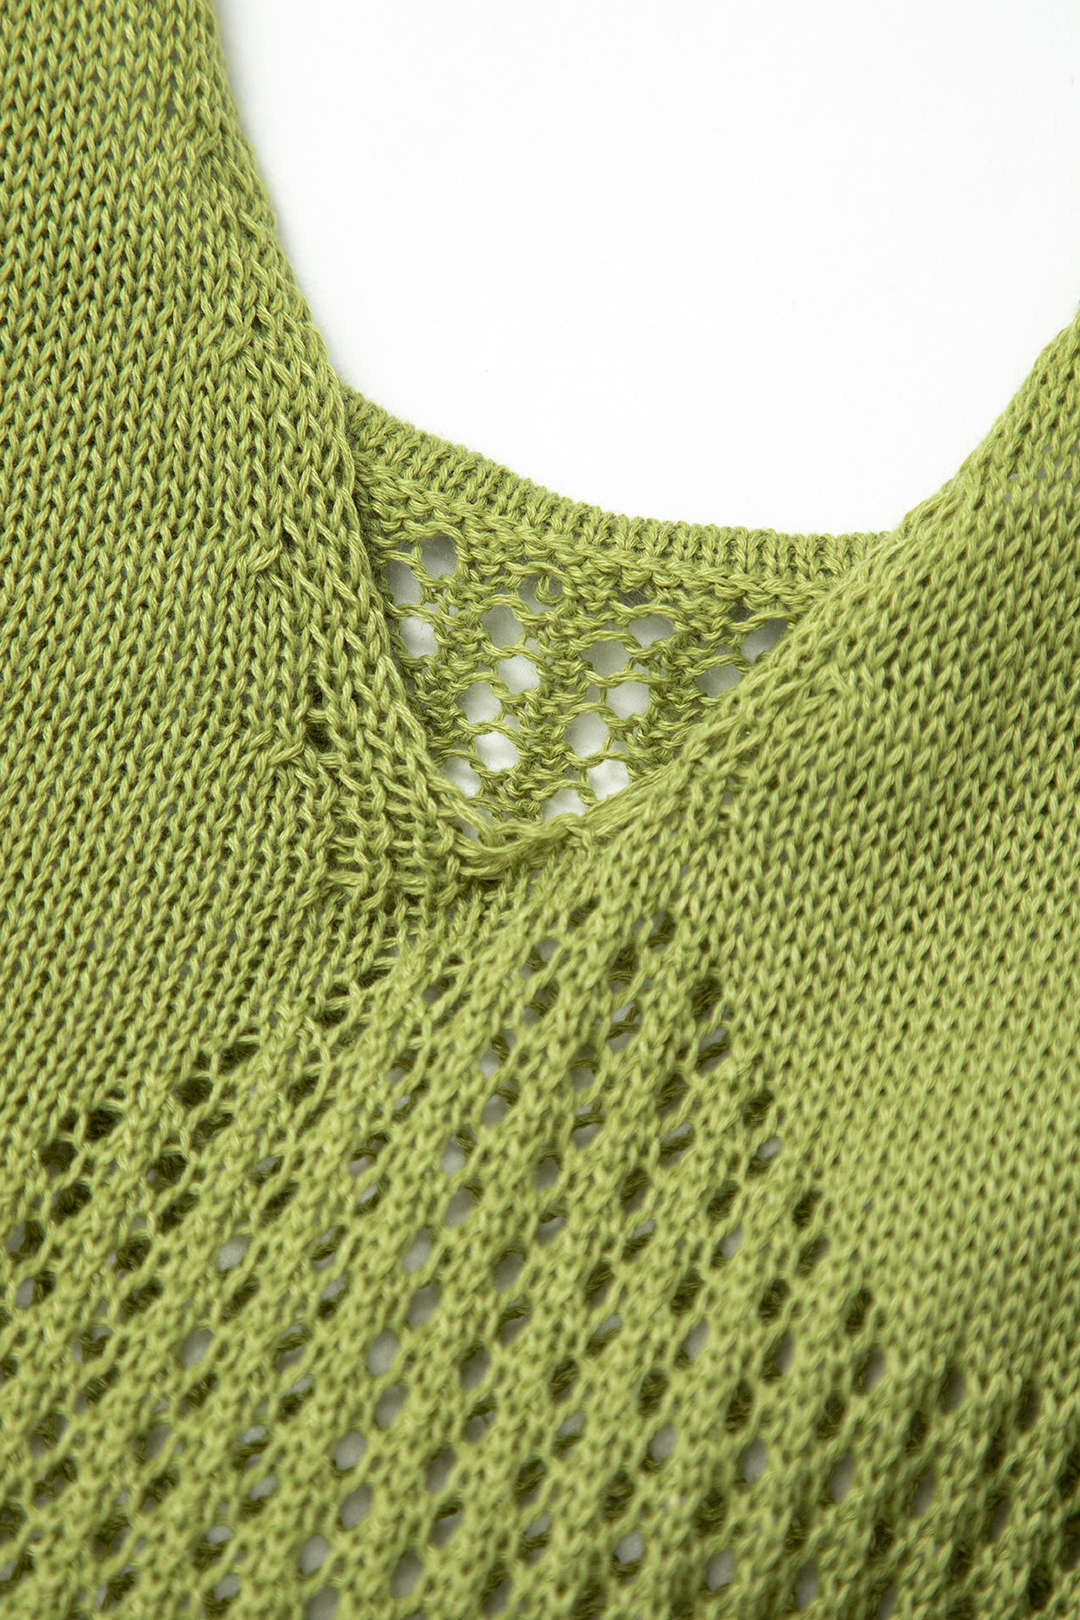 Knit Mini Dress - Green